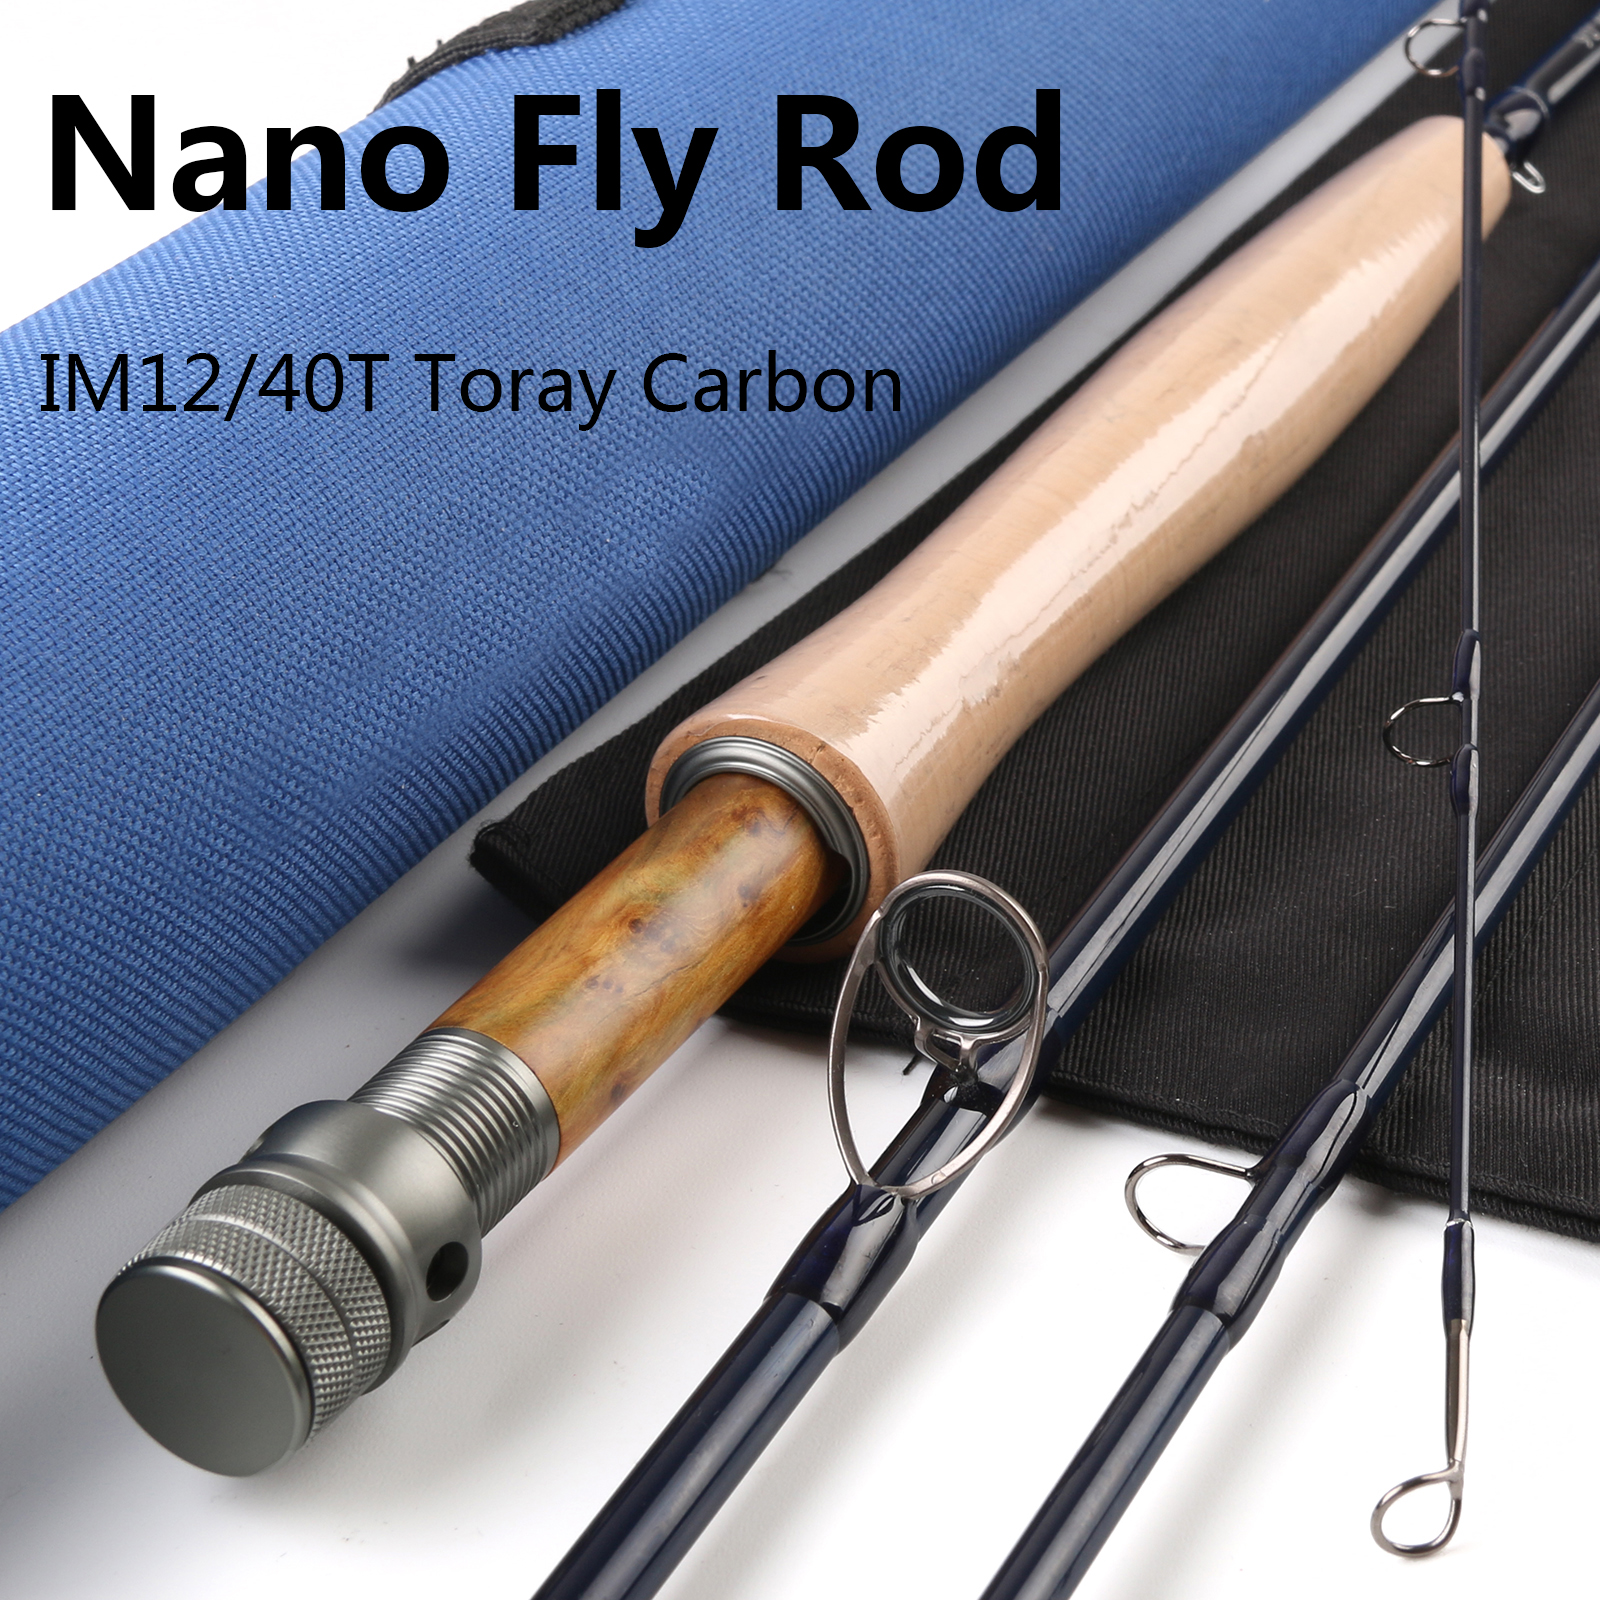 Nano Fly rod